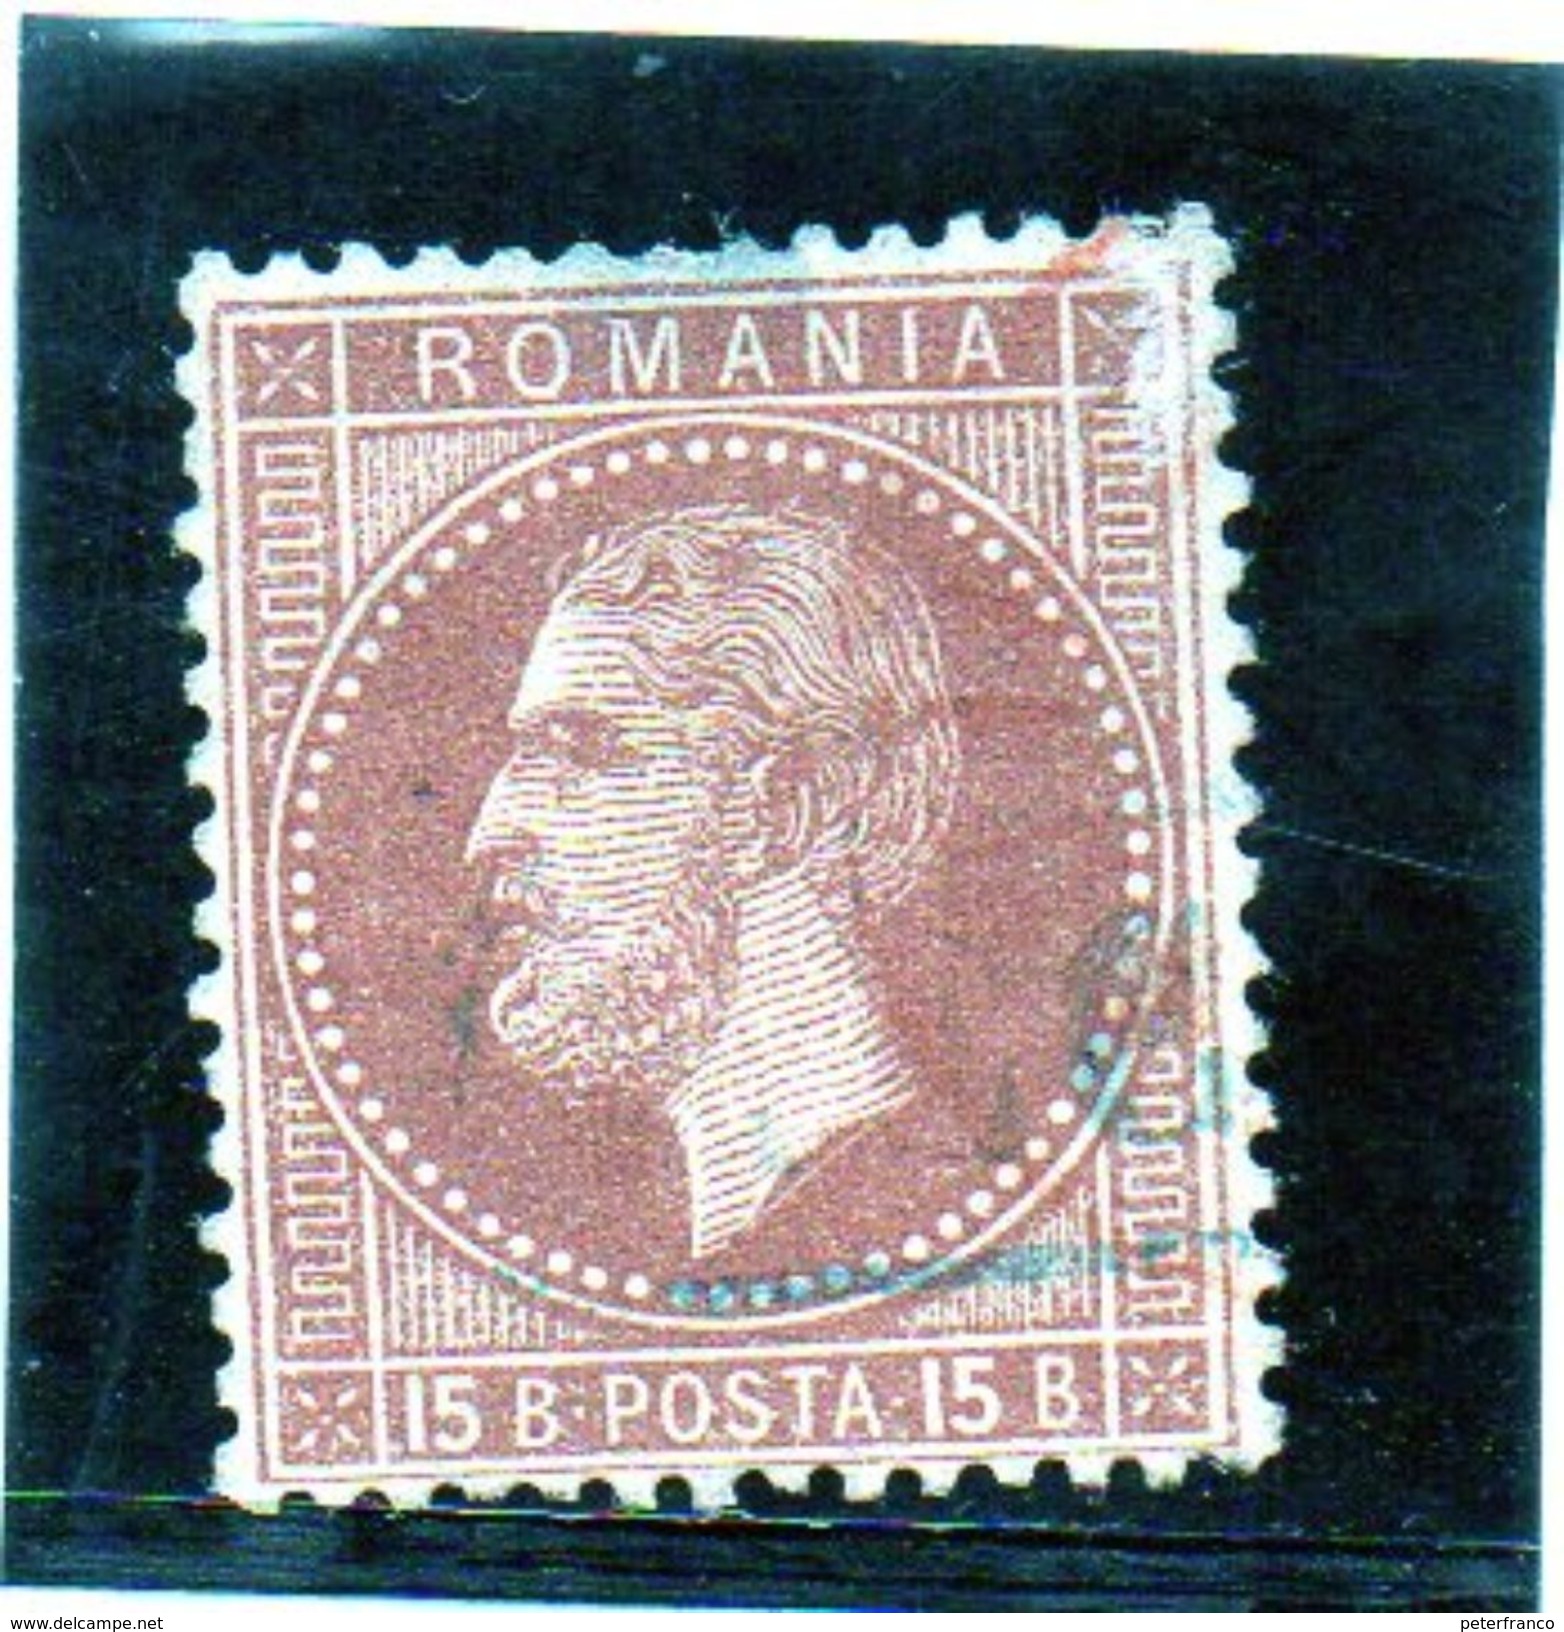 B - 1872 Romania - Karol I - 1858-1880 Fürstentum Moldau